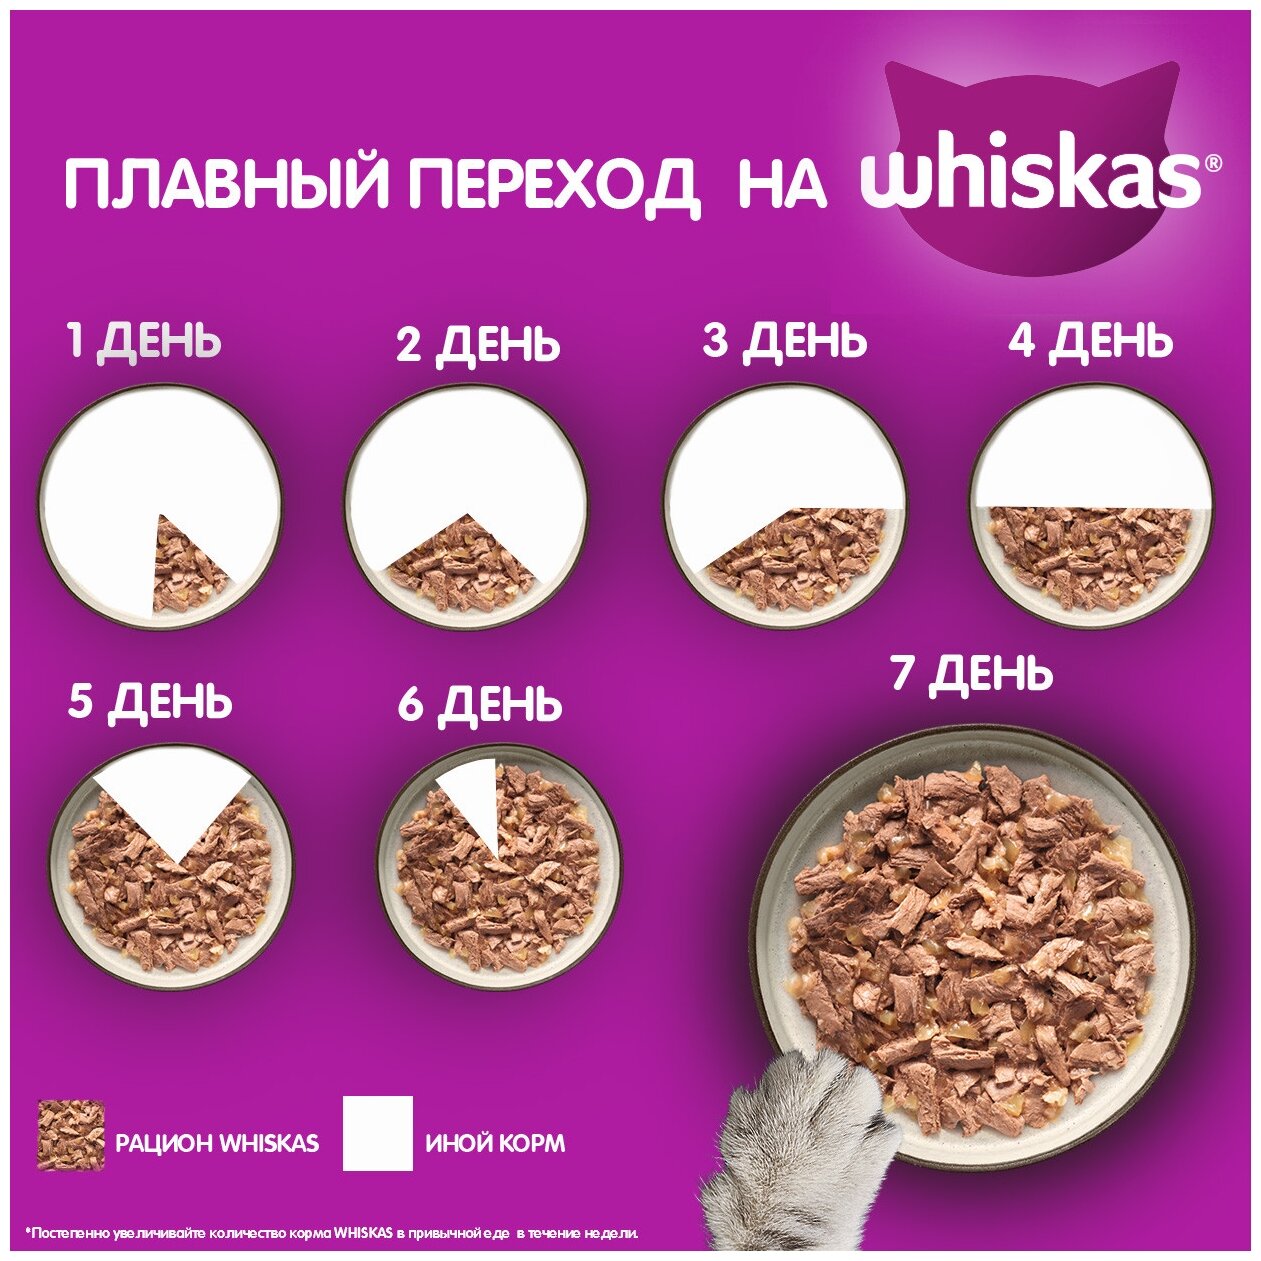 Whiskas влажный корм для кошек, желе с говядиной и ягненком (28шт в уп) 75 гр